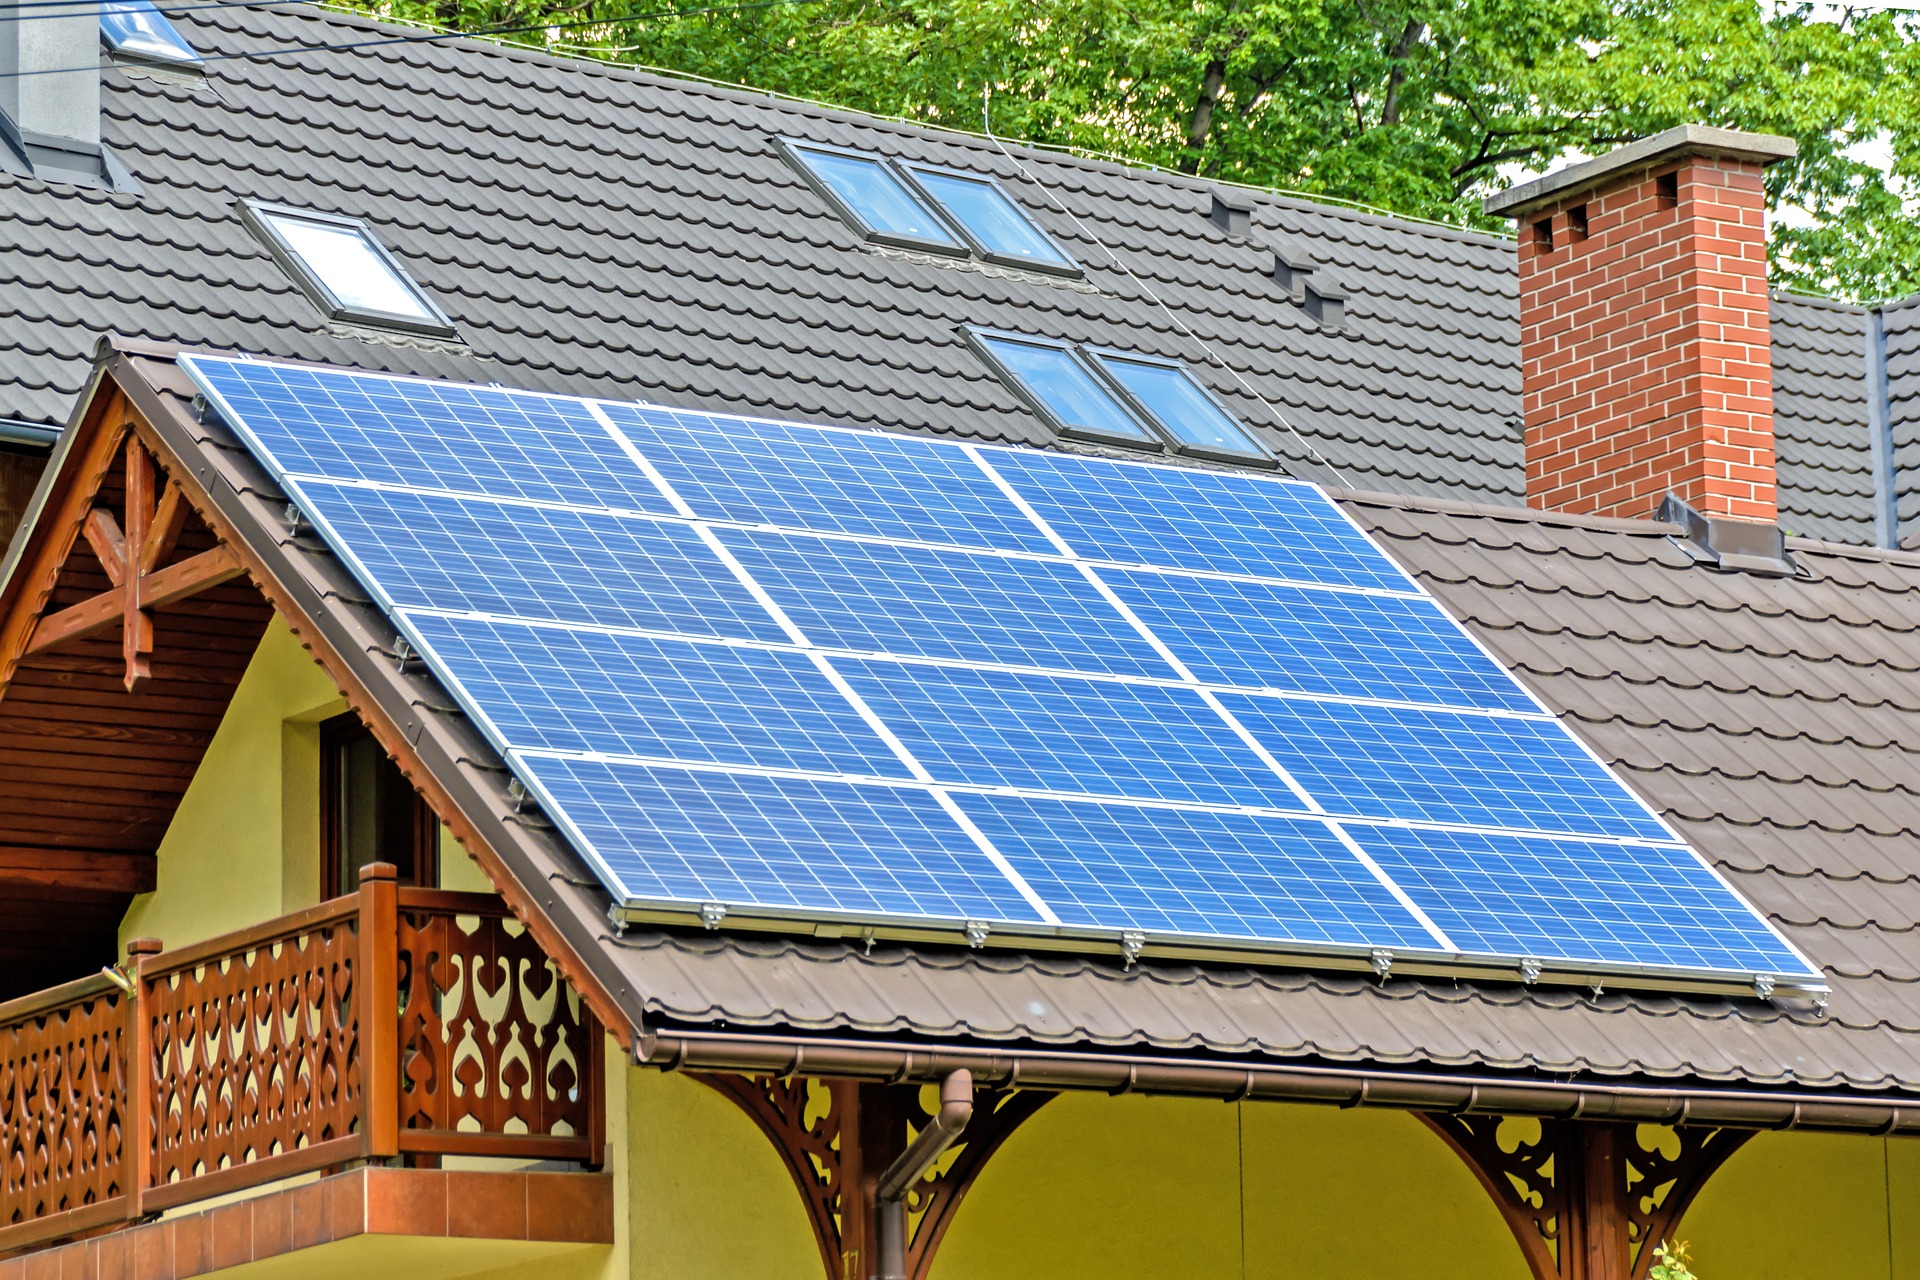 Solarkollektoren – Wie Sie die Sonnenstrahlung nutzen können, um Heizkosten zu sparen und die Umwelt zu schonen